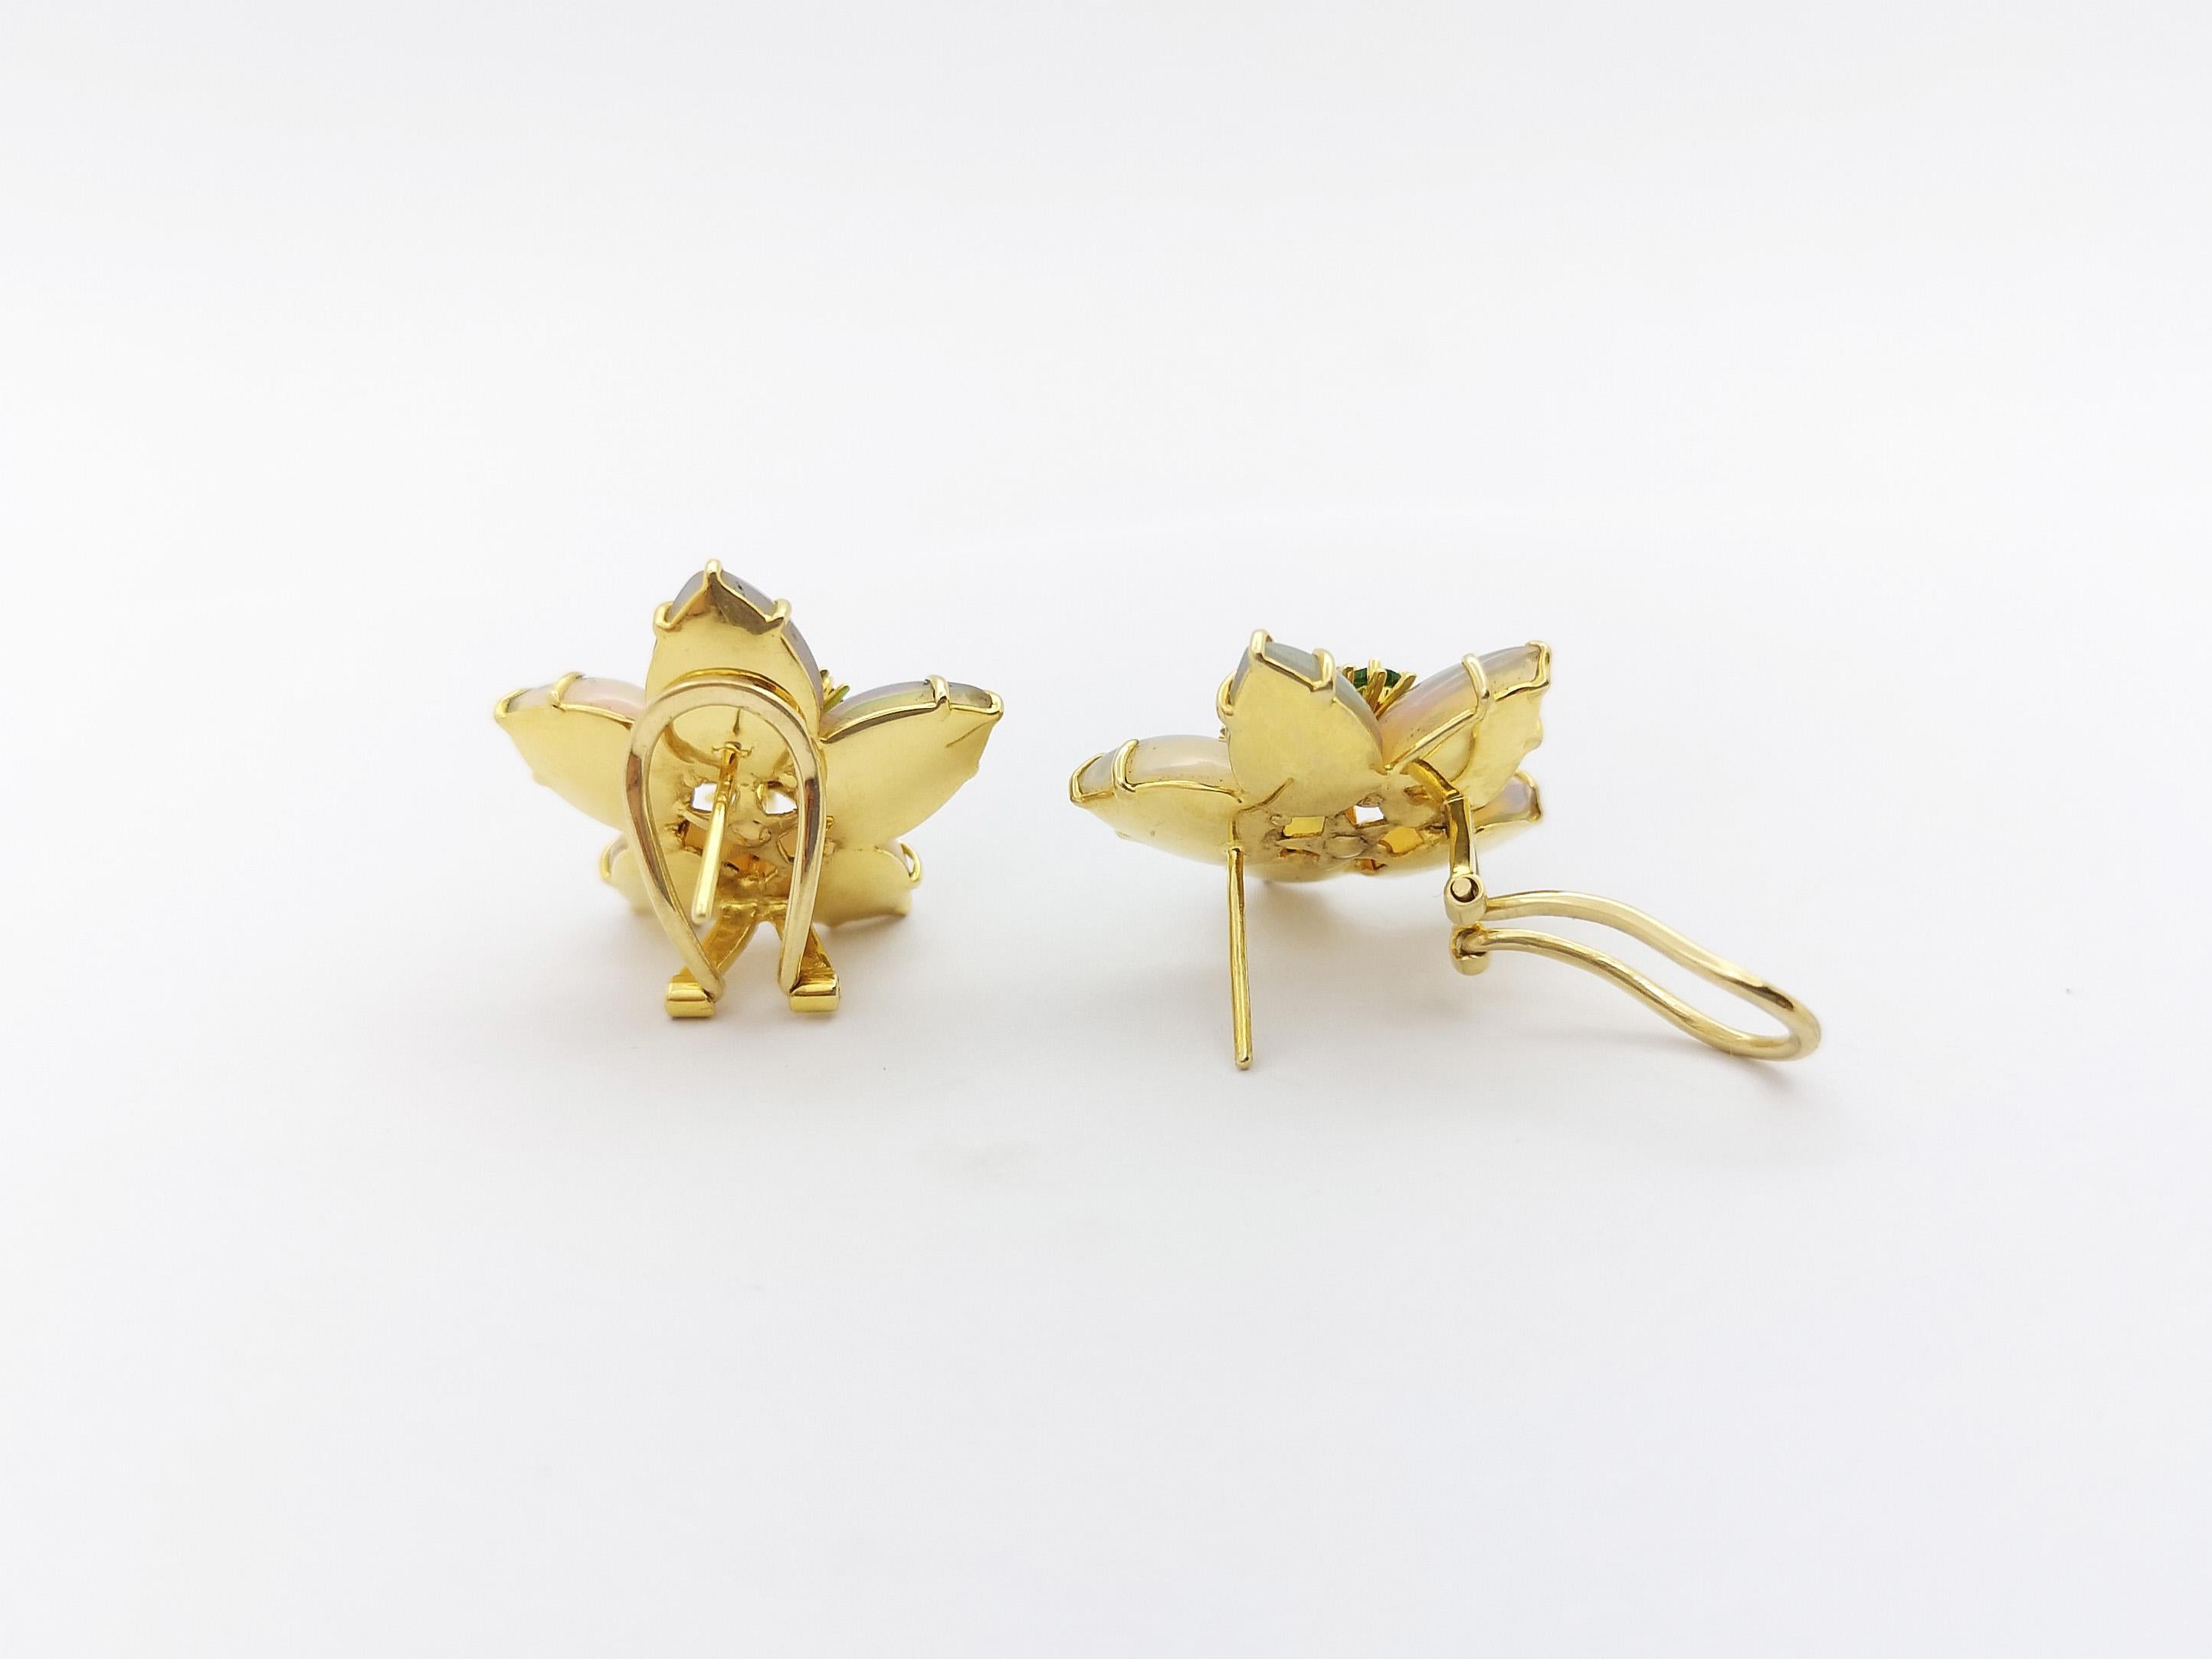 Opal, Tsavorite and Diamond Star Earrings set in 18K Gold Settings For Sale 2